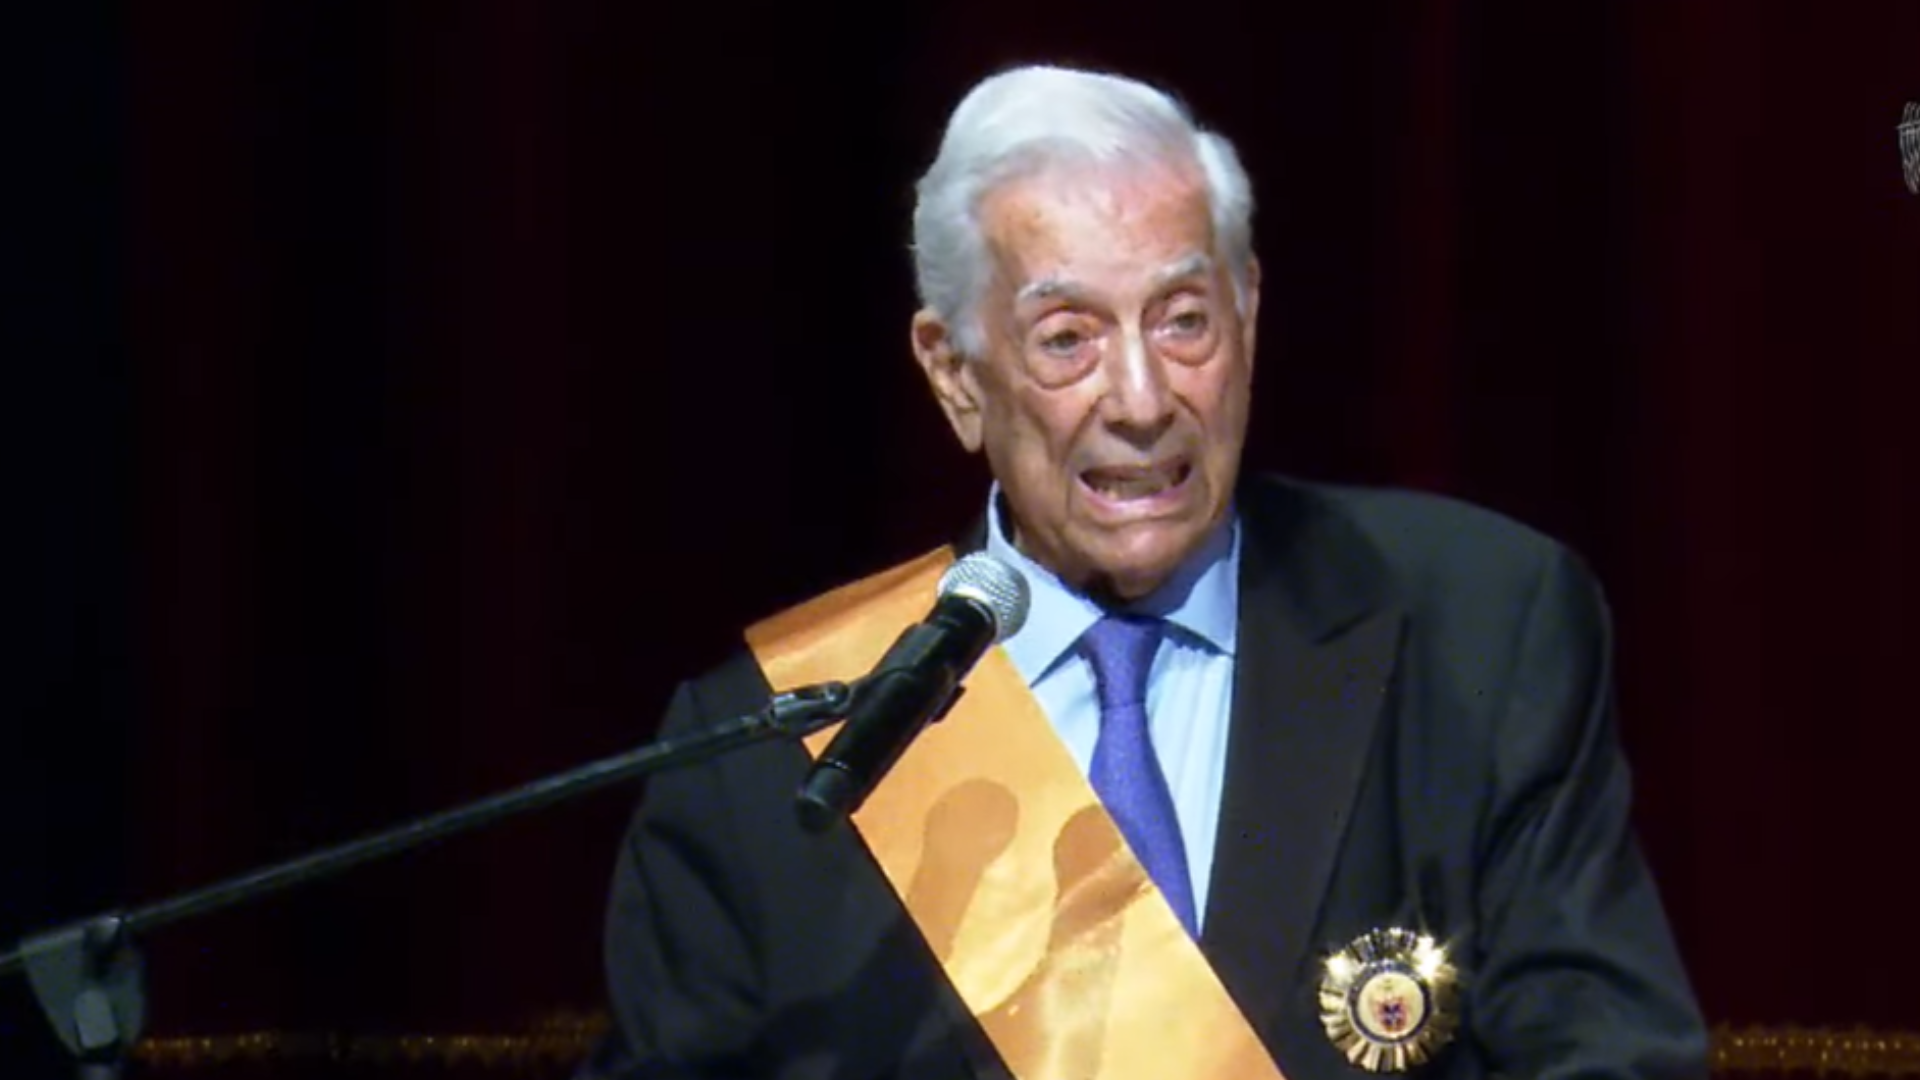 Mario Vargas Llosa llamó “demagógicos y populistas” a gobiernos de México, Colombia, Argentina y Bolivia 